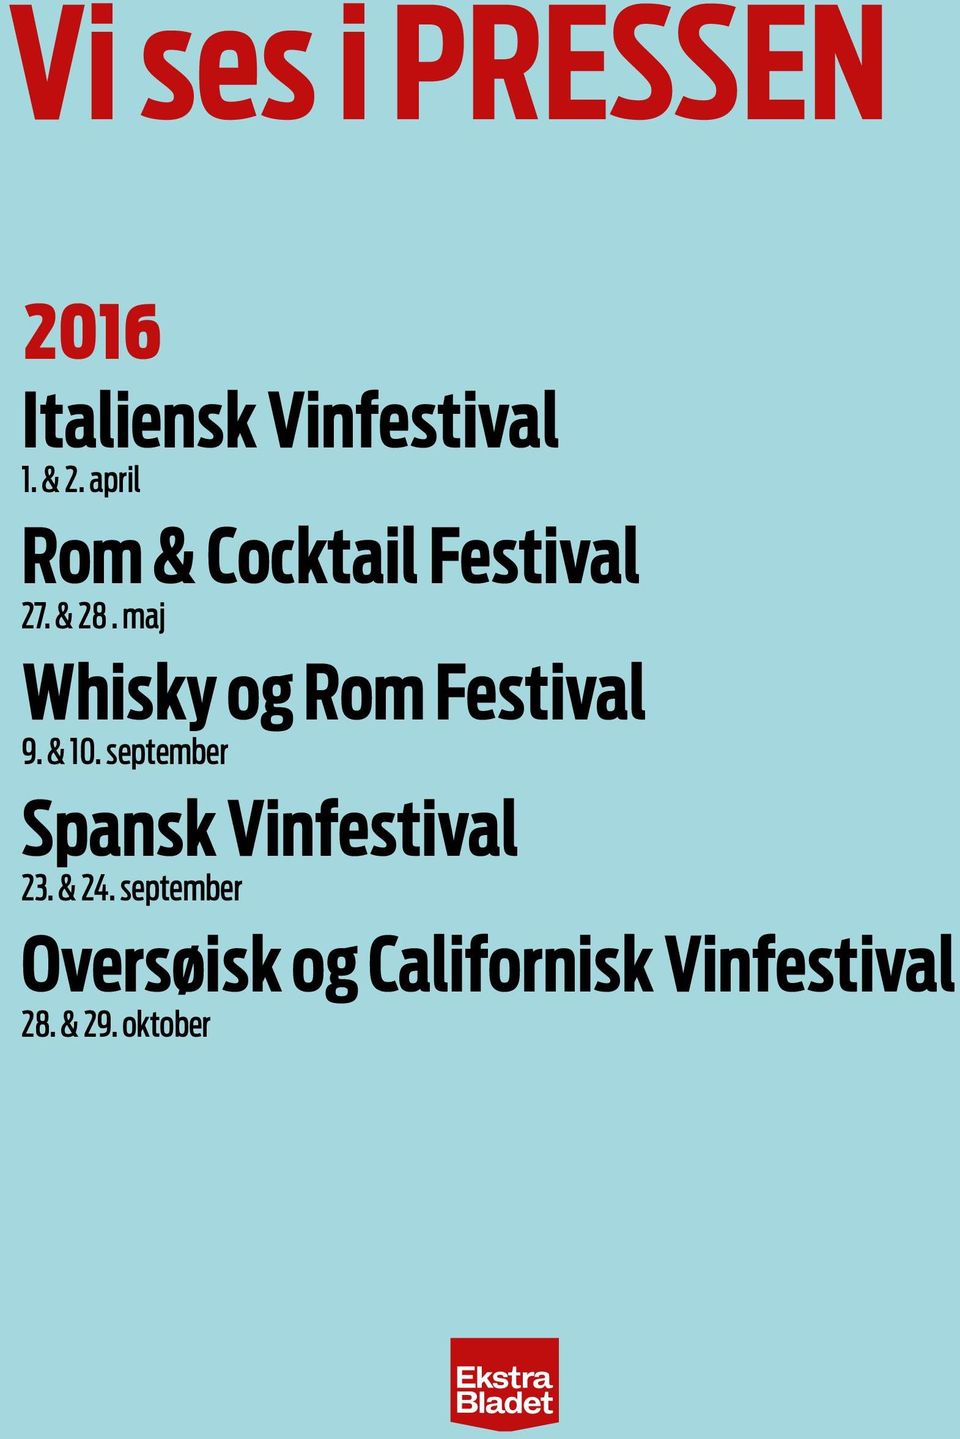 maj Whisky og Rom Festival 9. & 10.